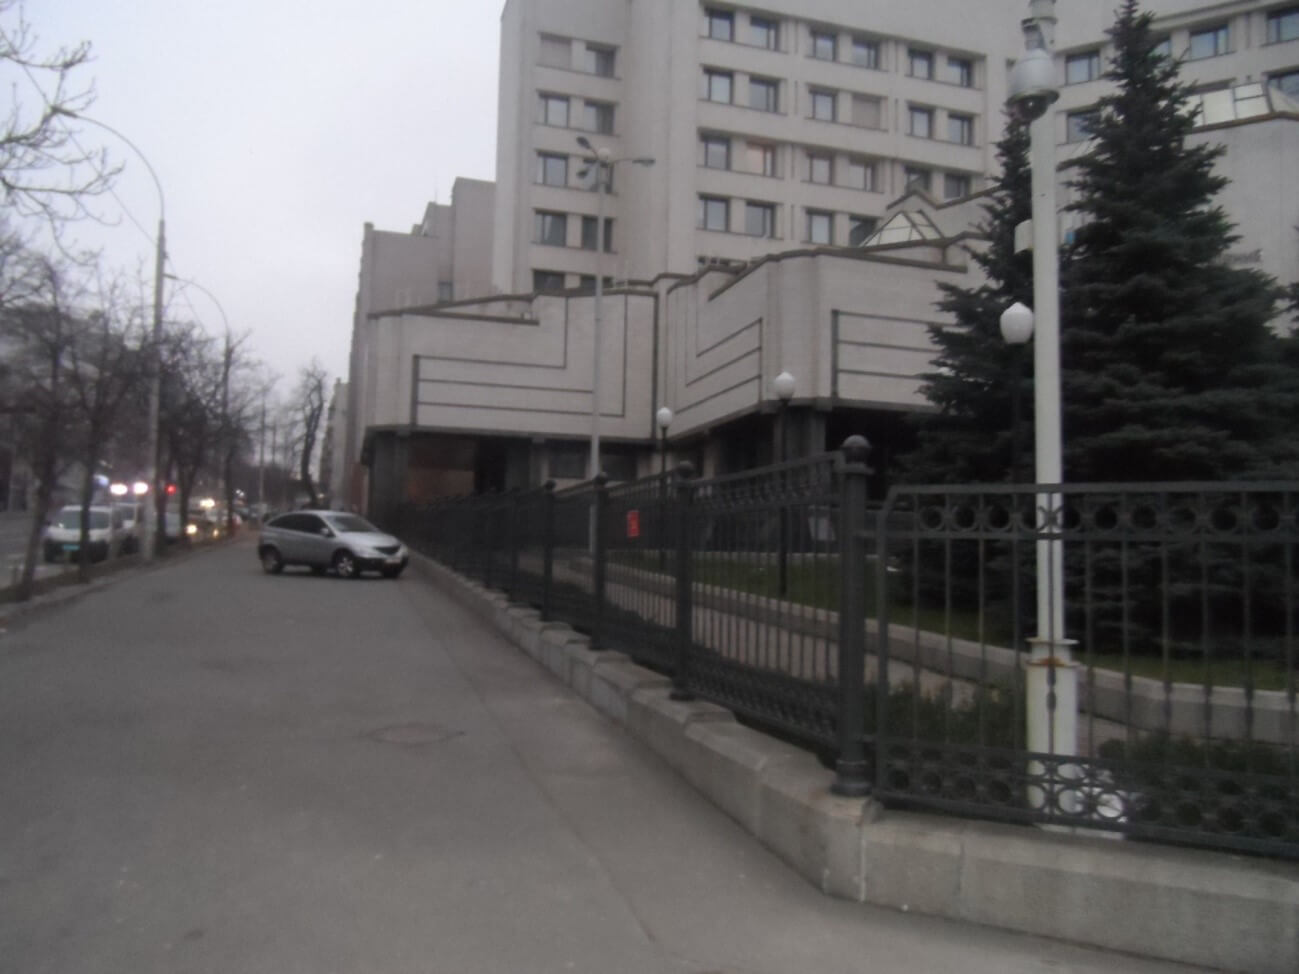 Правоохранители задержали “минера” суда в Киеве